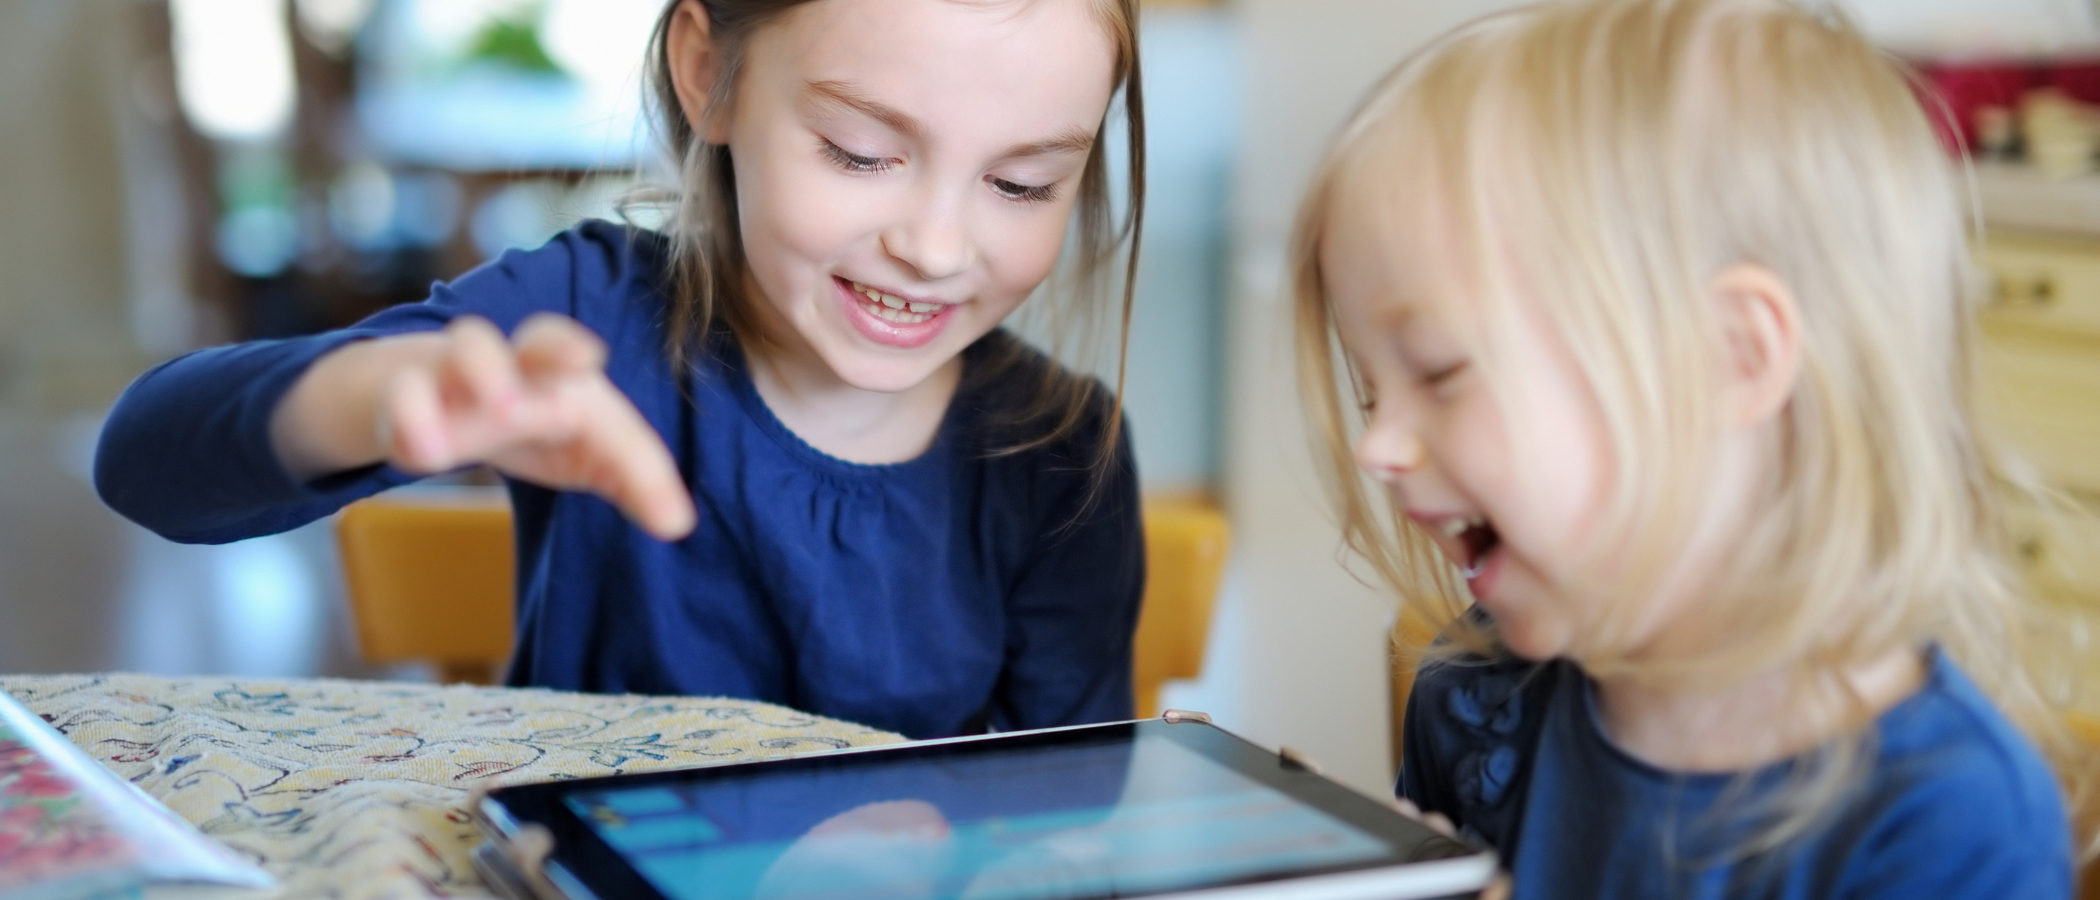 Youtube Kids, una app de entretenimiento para niños y tranquilidad para madres y padres